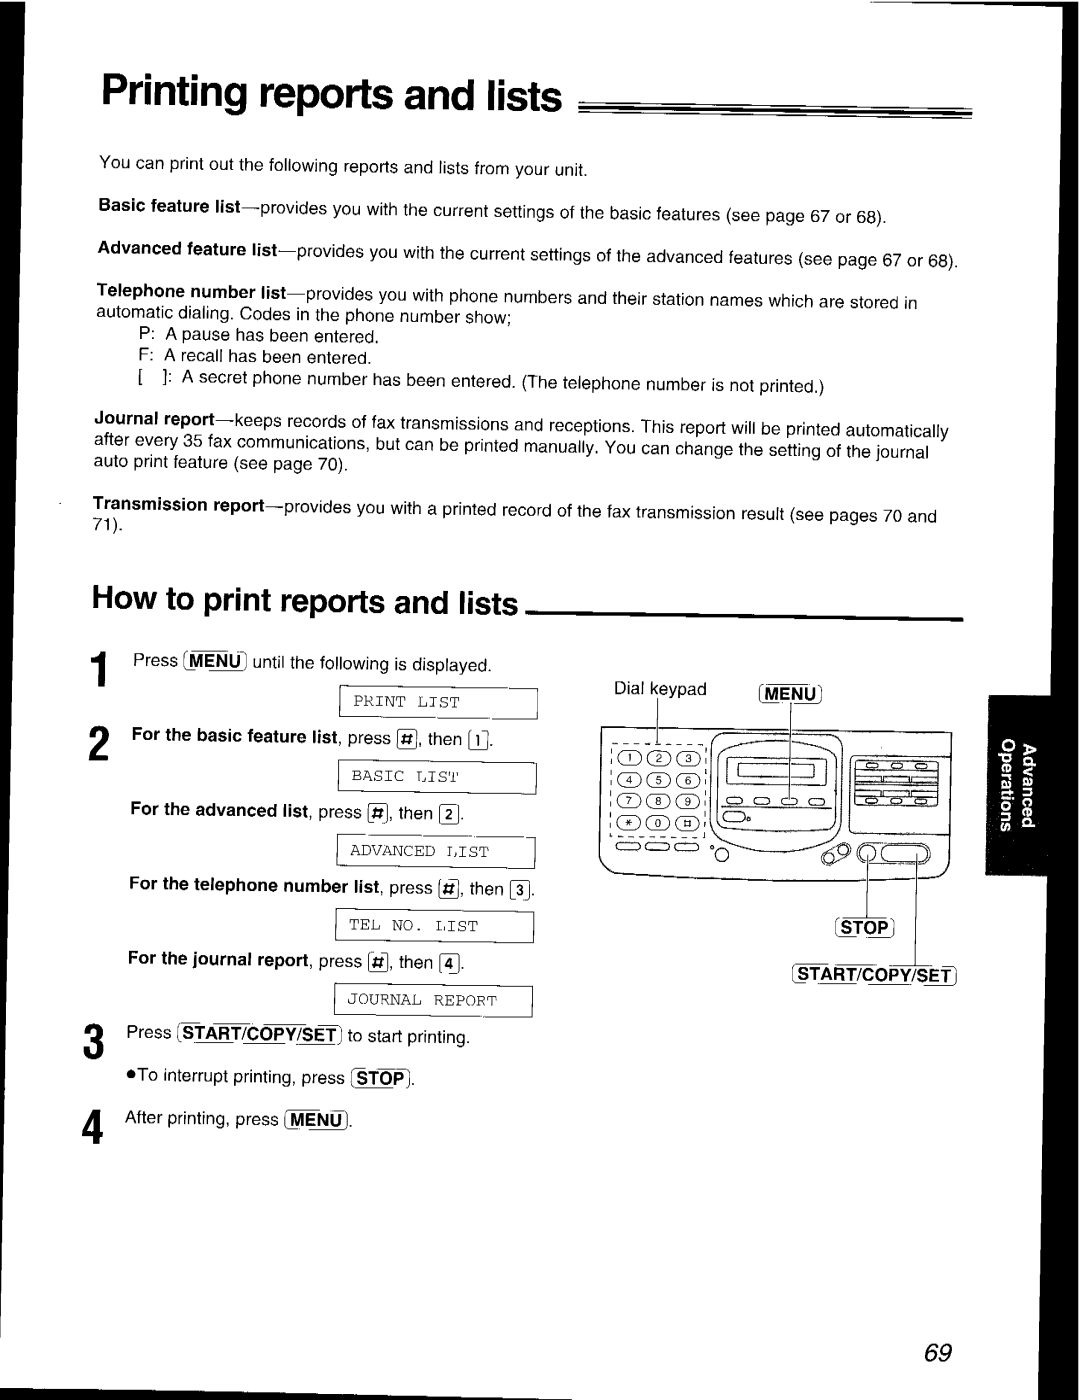 Panasonic KX-F2581AL, KX-F2781AL manual 